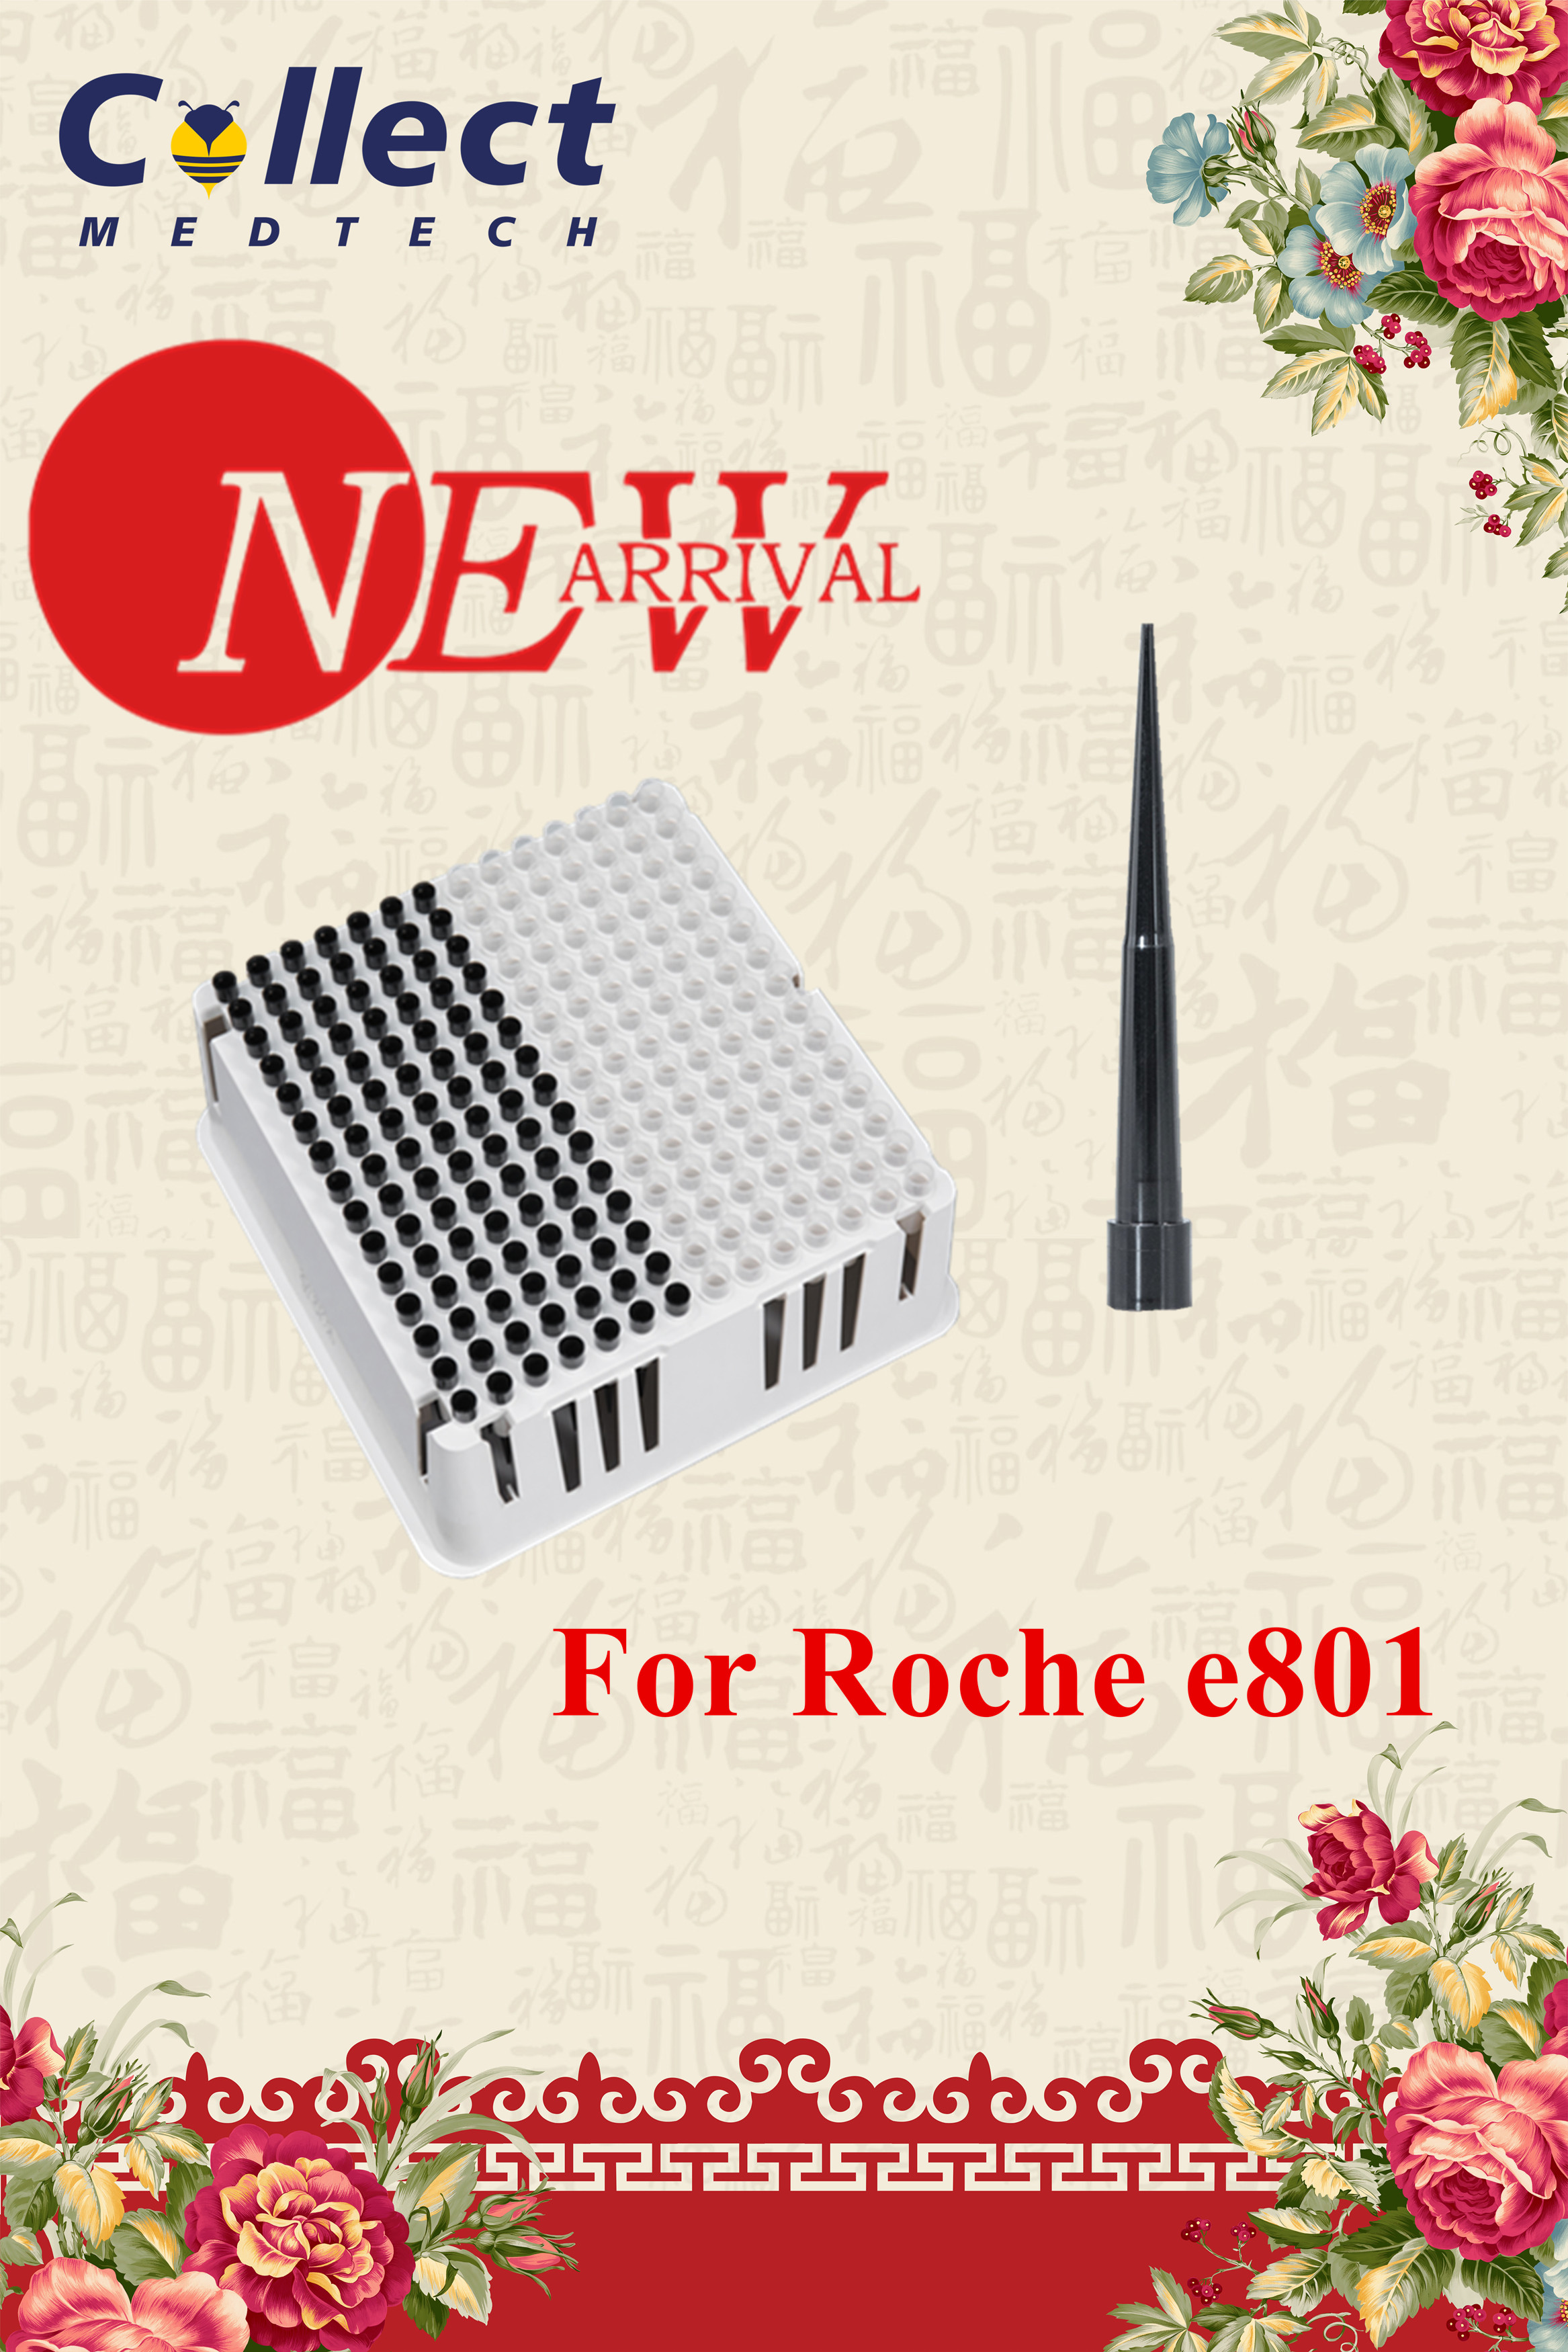 Recién Llegado – Bandeja de puntas y tazas para Roche e801